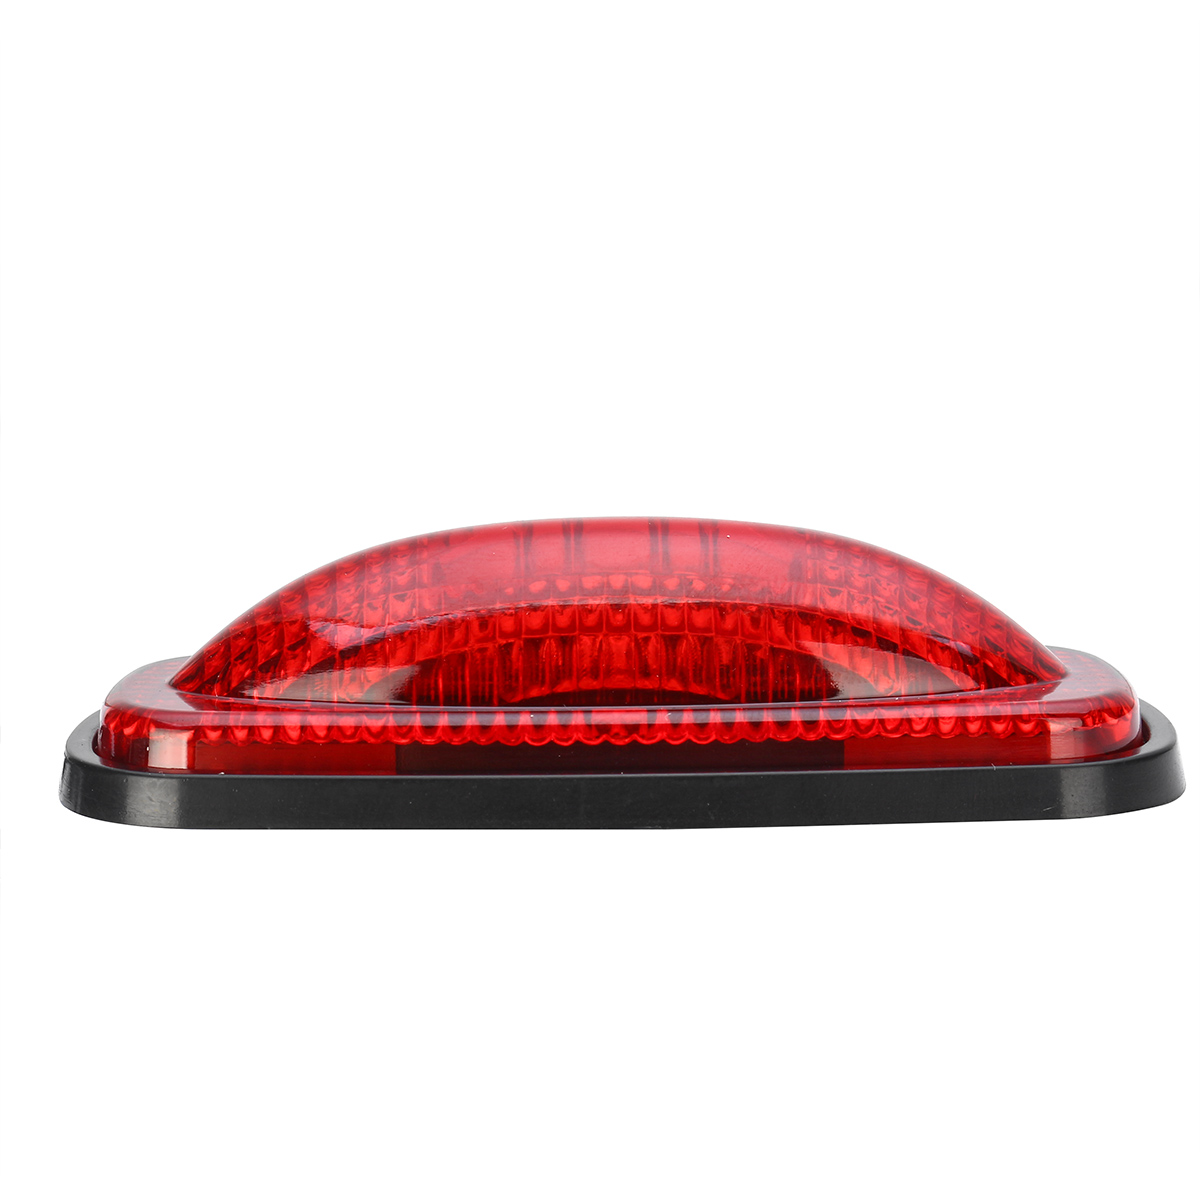 LED Side Fender Marker Light Warning Lamp for Dodge Ram 1500 2500 3500 4500 5500